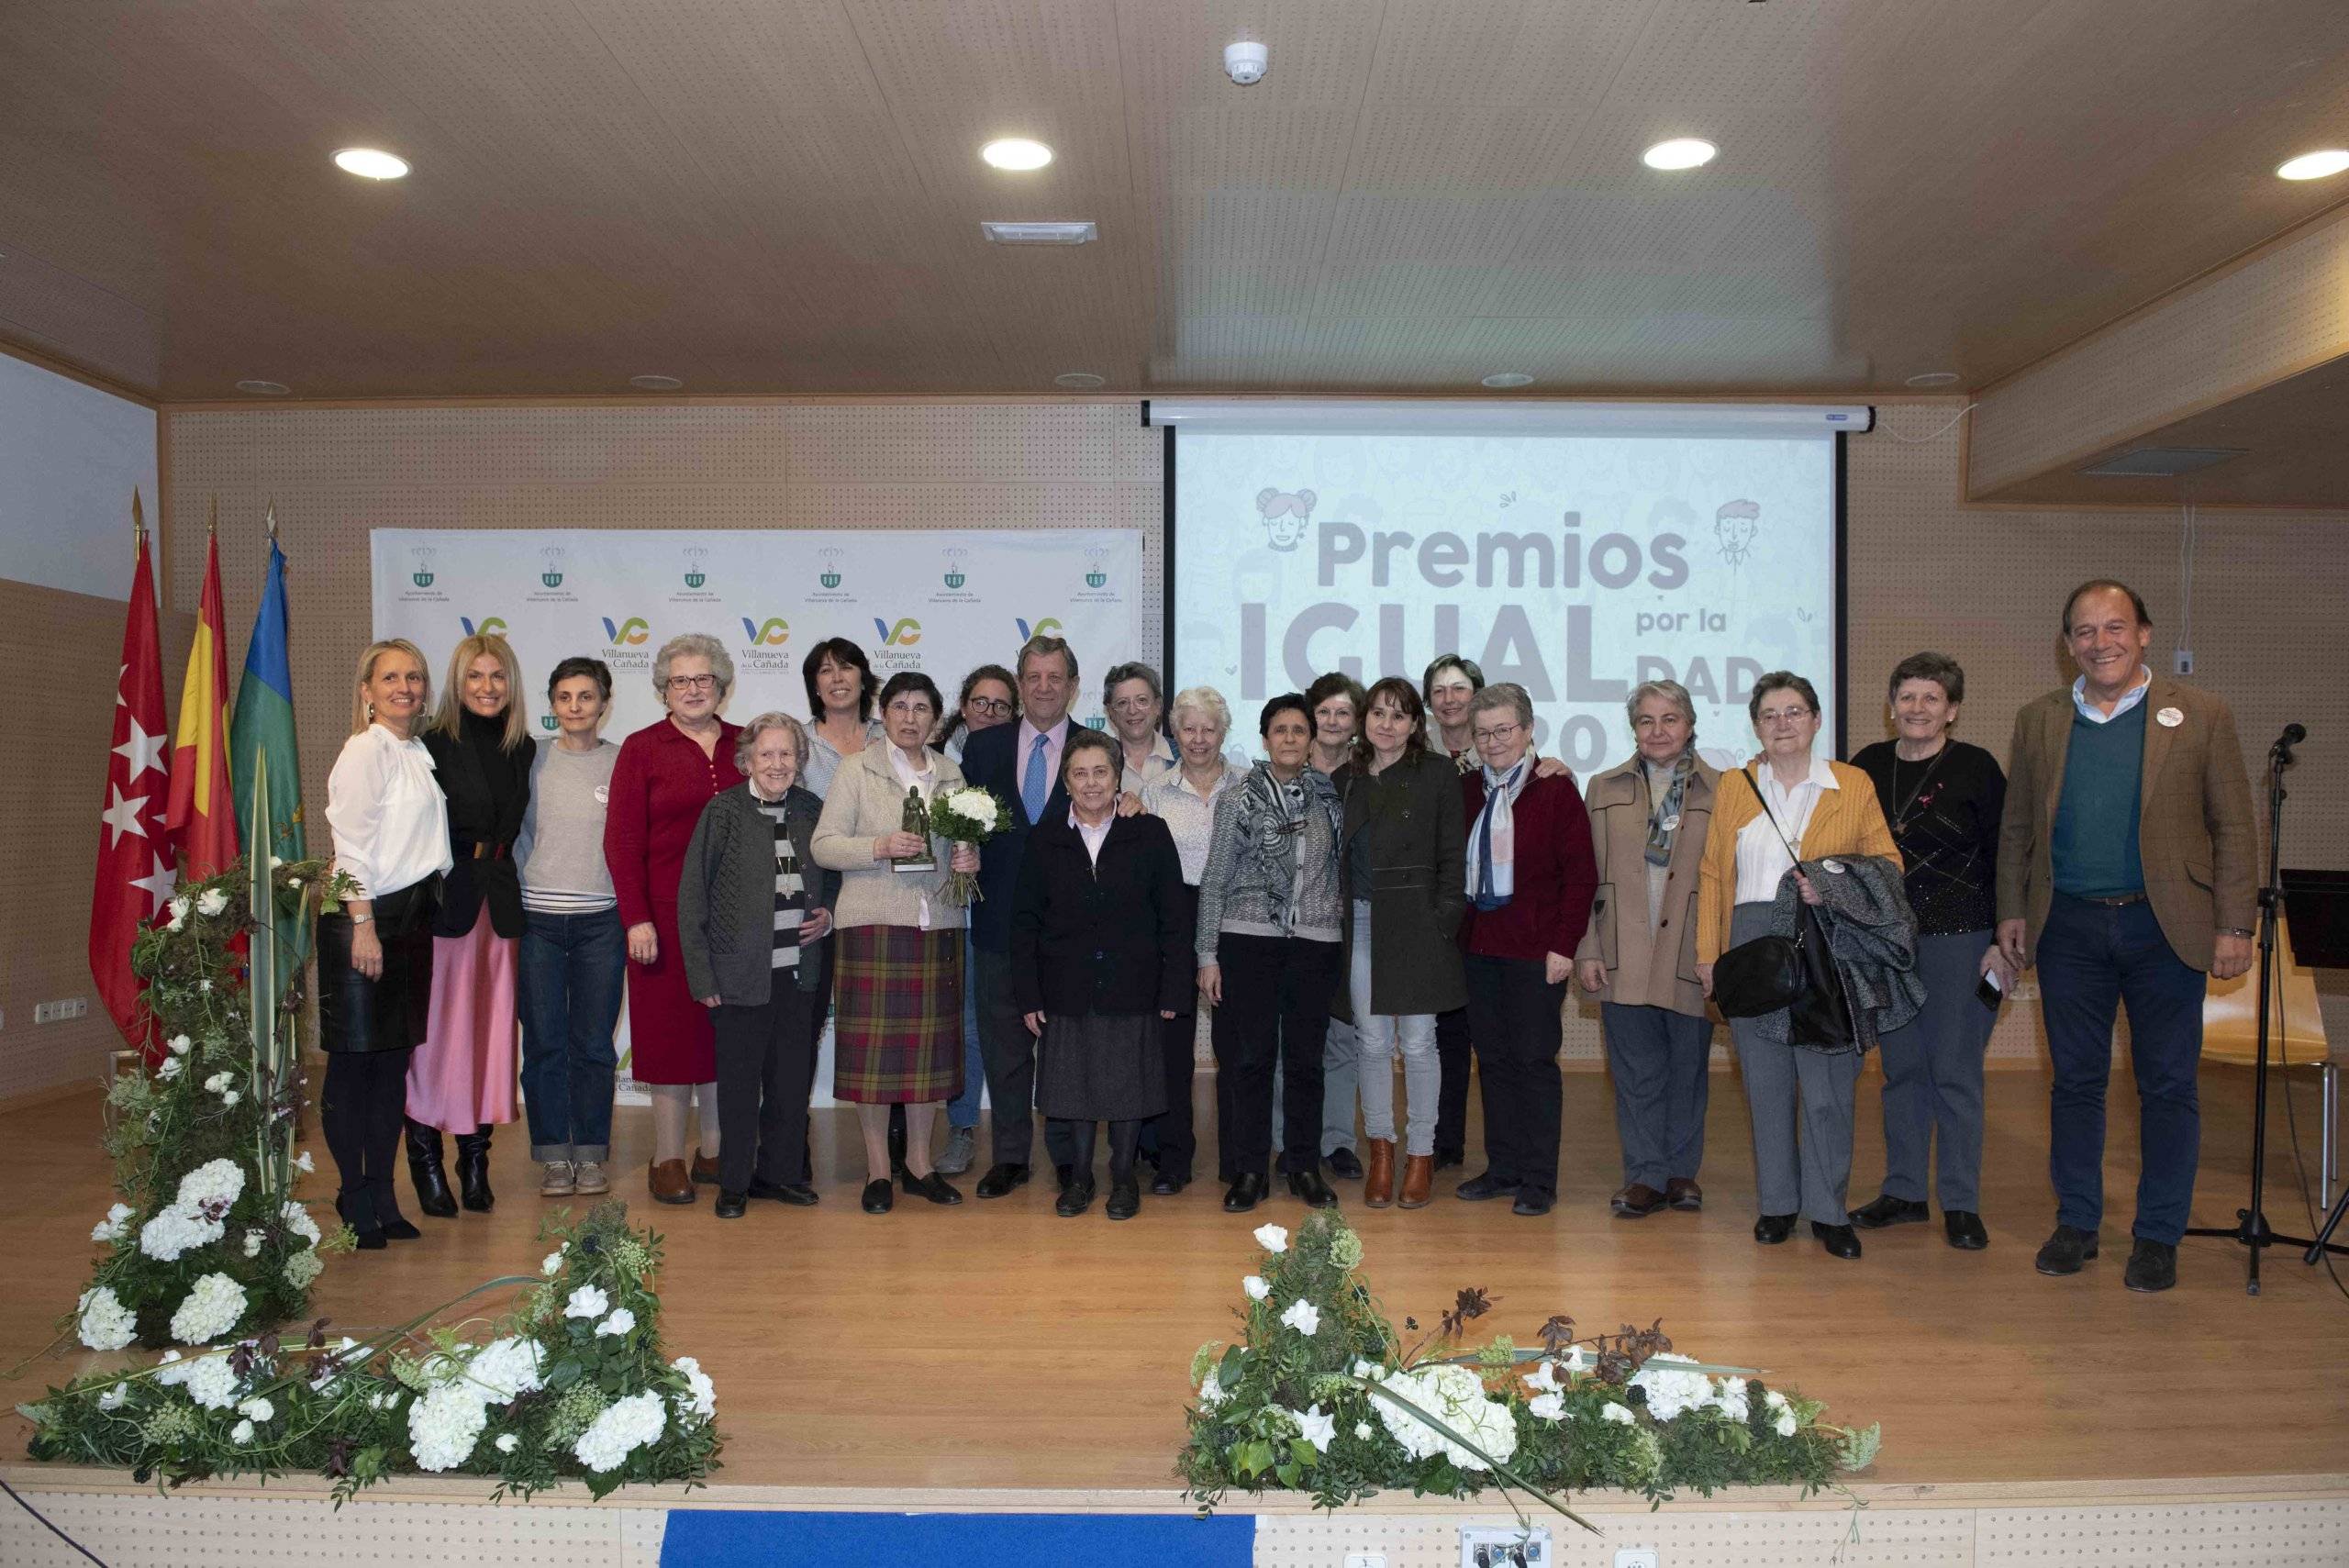 Foto de familia de autoridades locales, junto a docentes y antiguas alumnas Escolapias.